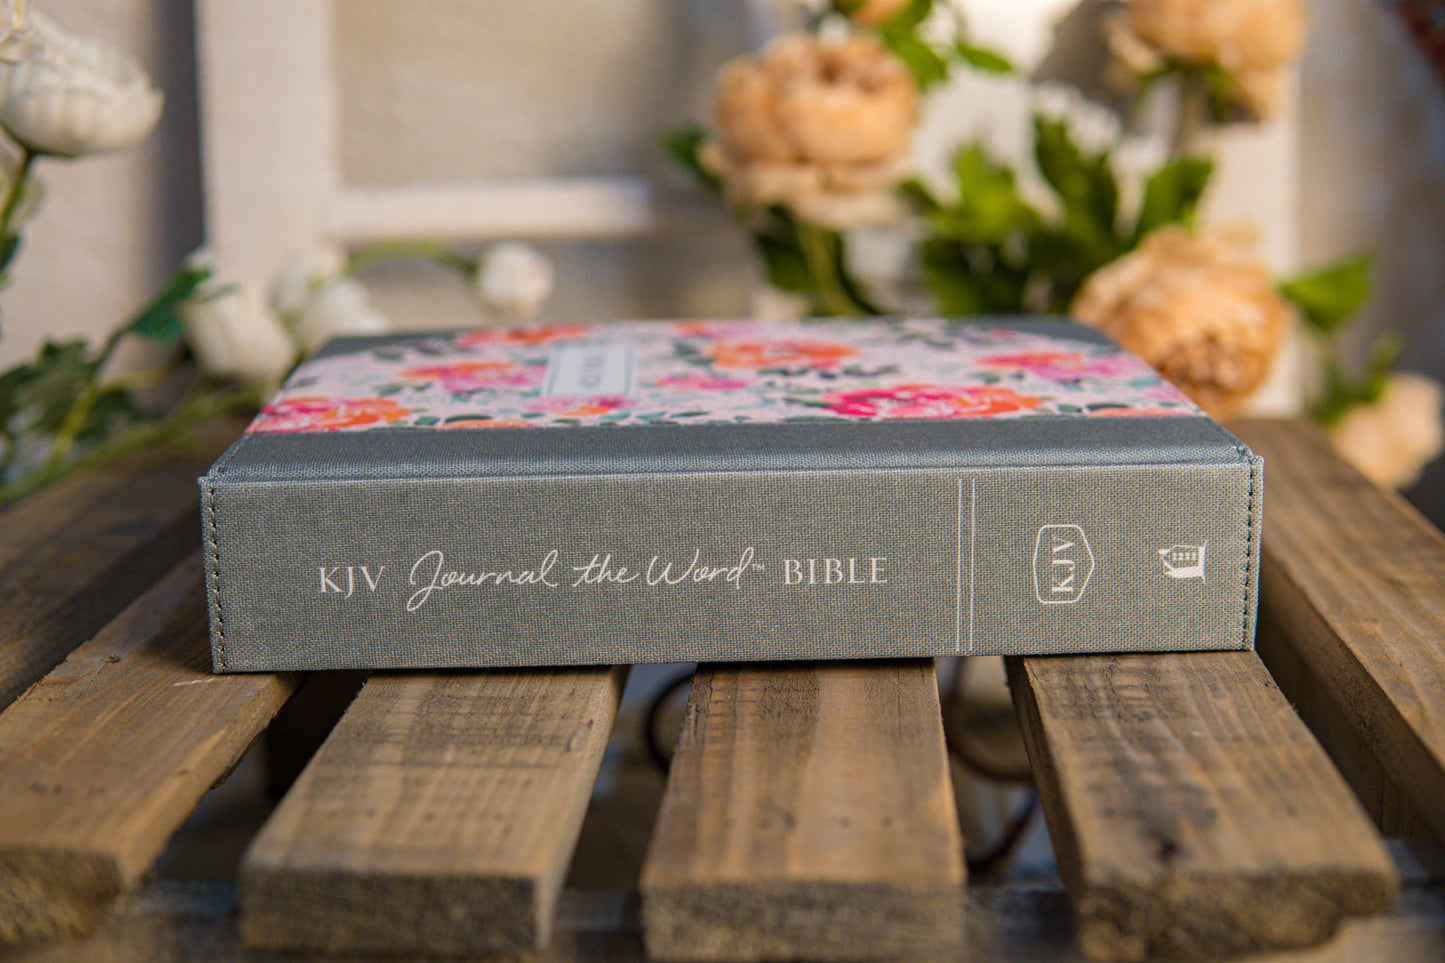 KJV White Floral Journal Bible